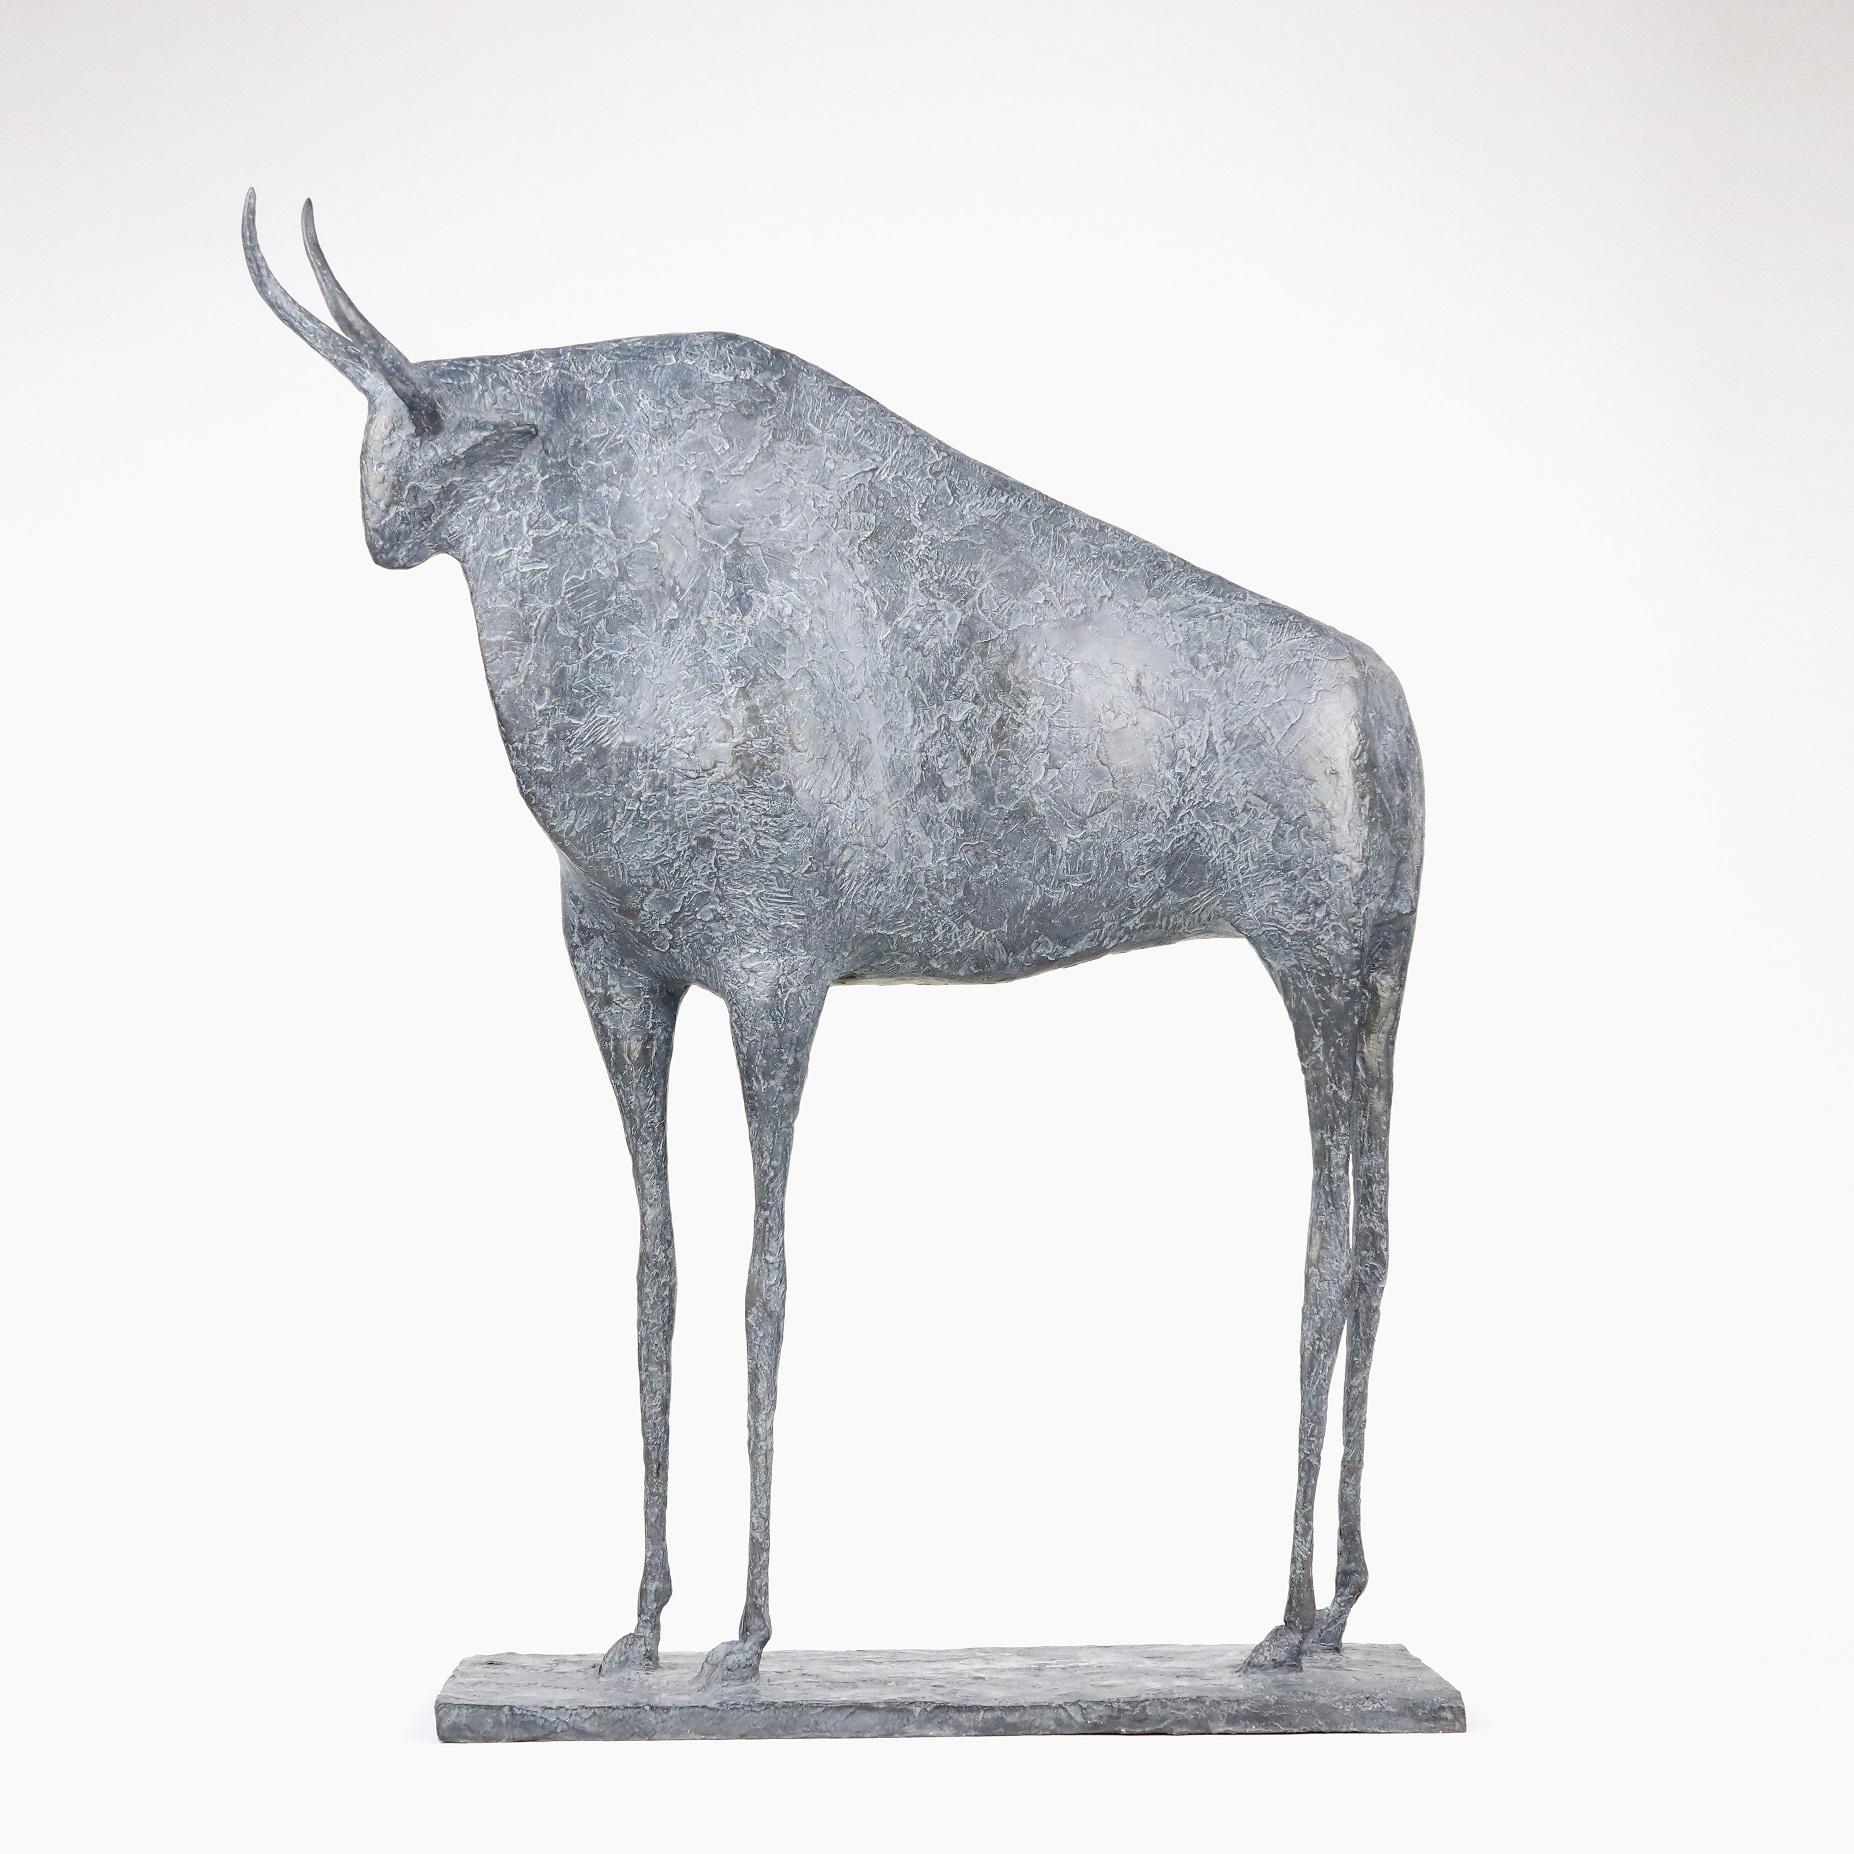 Taureau VII est une sculpture de l'artiste contemporain français Pierre Yermia.
"Le taureau est le seul animal masculin de mon bestiaire. Sa présence silencieuse et sereine s'impose par son torse massif, soutenu par de longues jambes qui soulignent